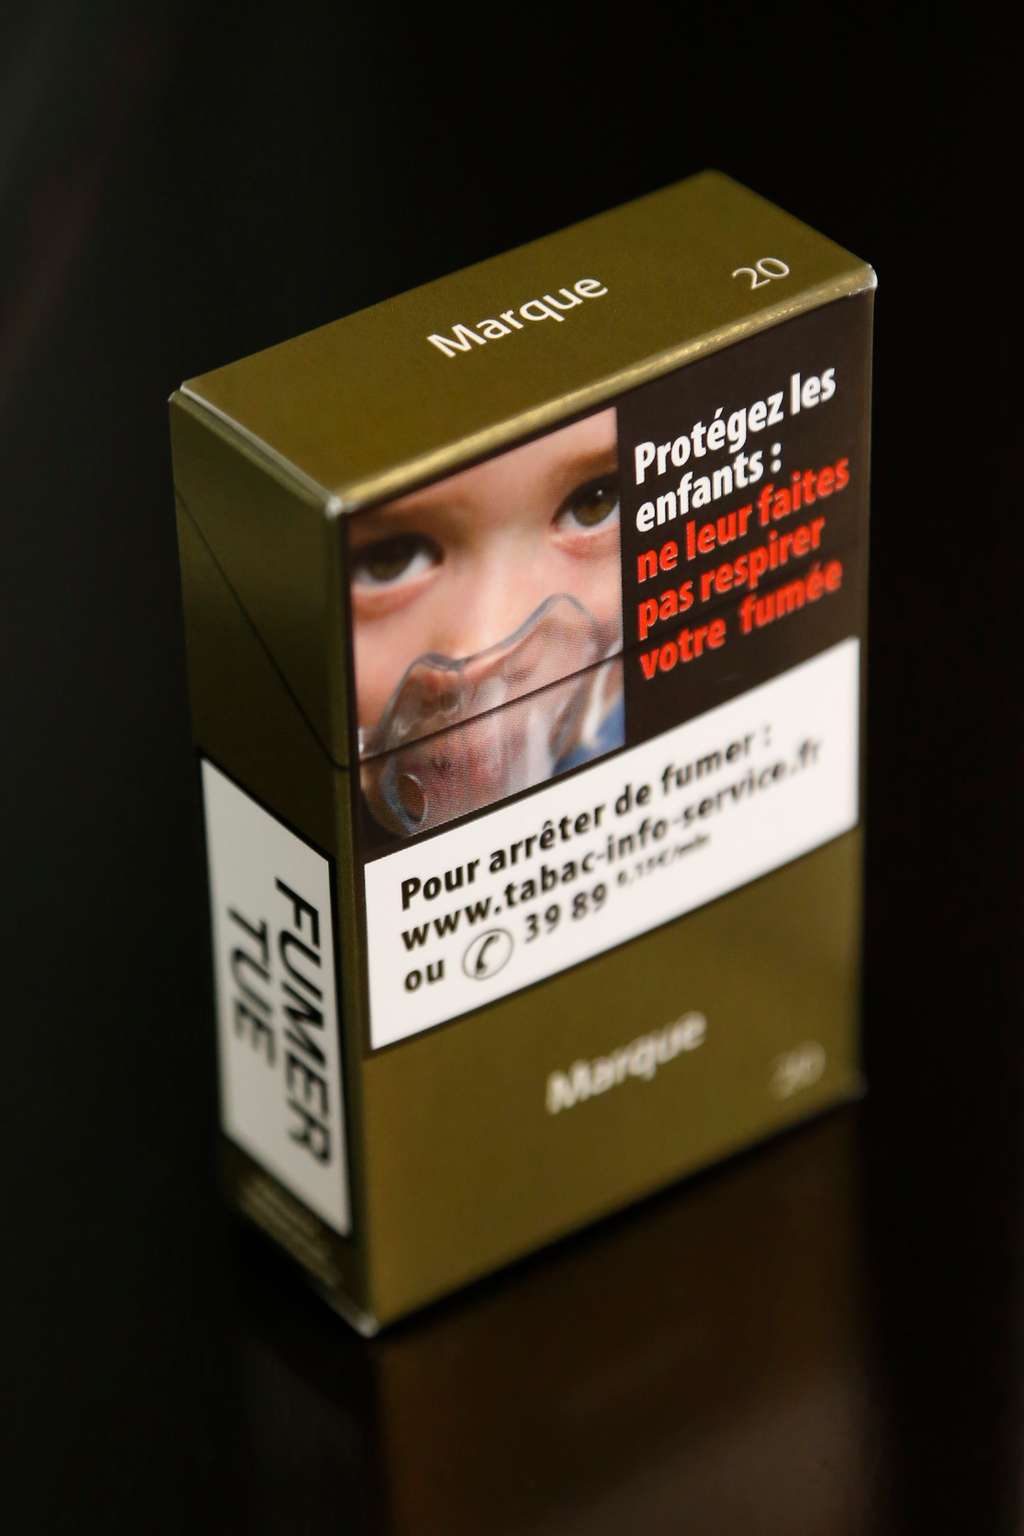 Le paquet neutre comporte des messages de prévention et le nom de la marque apparaît sans son logo. Les paquets « traditionnels » ne peuvent désormais plus être produits pour le marché français. © Thomas Samson, AFP Photo